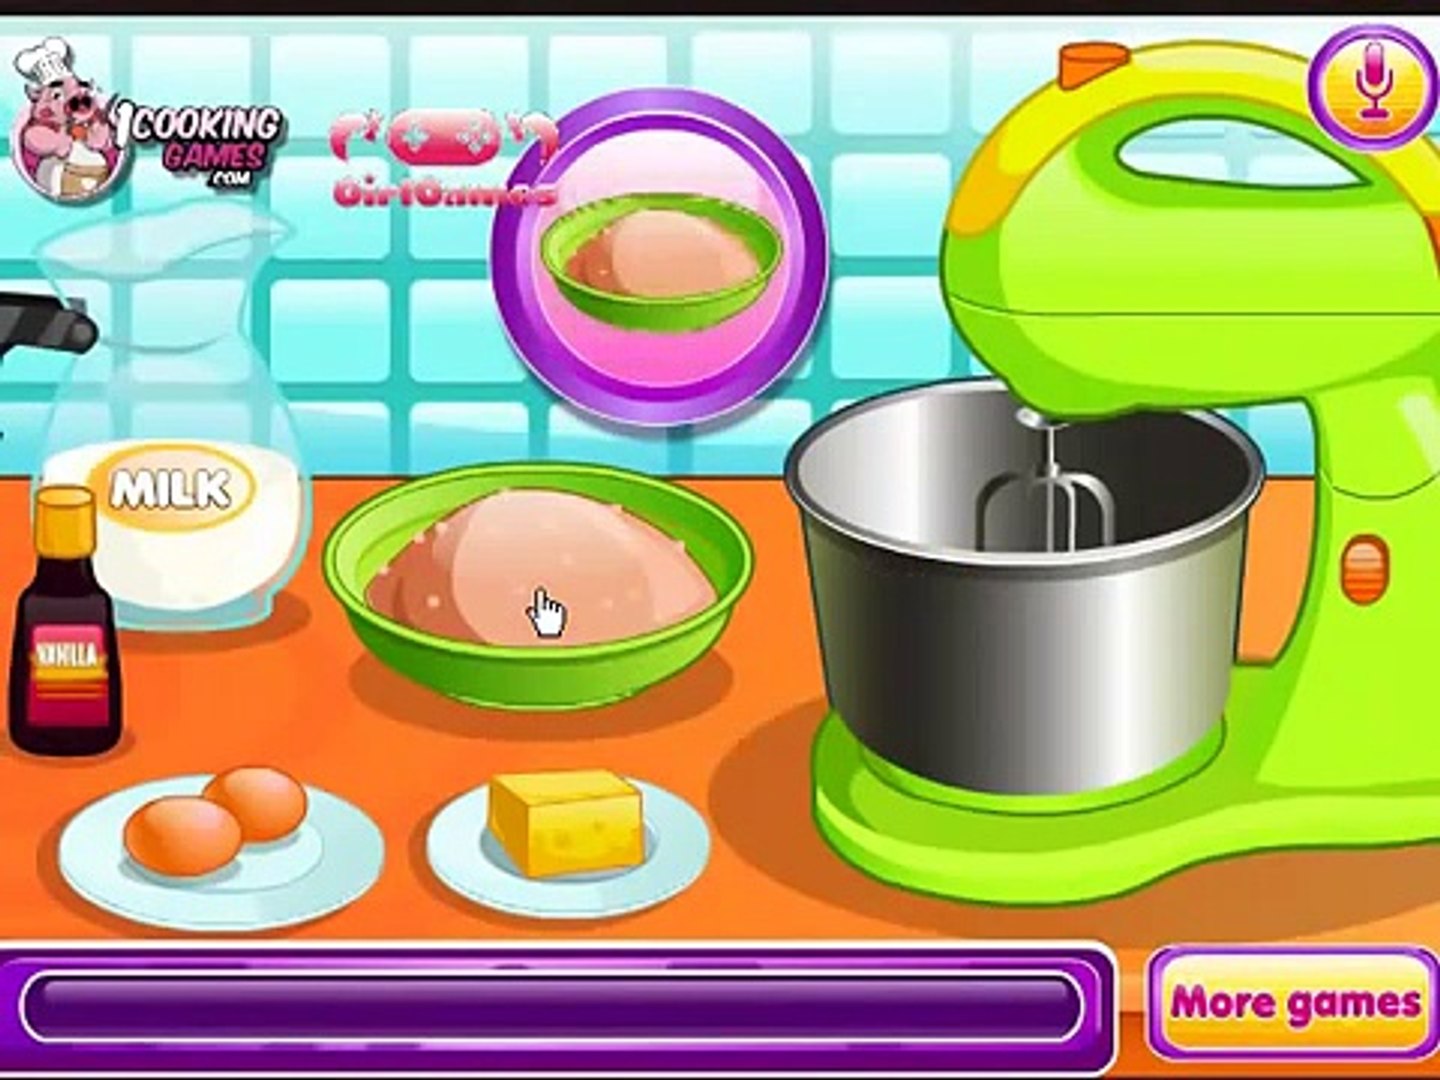 العاب طبخ - العاب بنات مع الطباخة وعمل الكيك الجميل للاطفال - Cooking games  - video Dailymotion